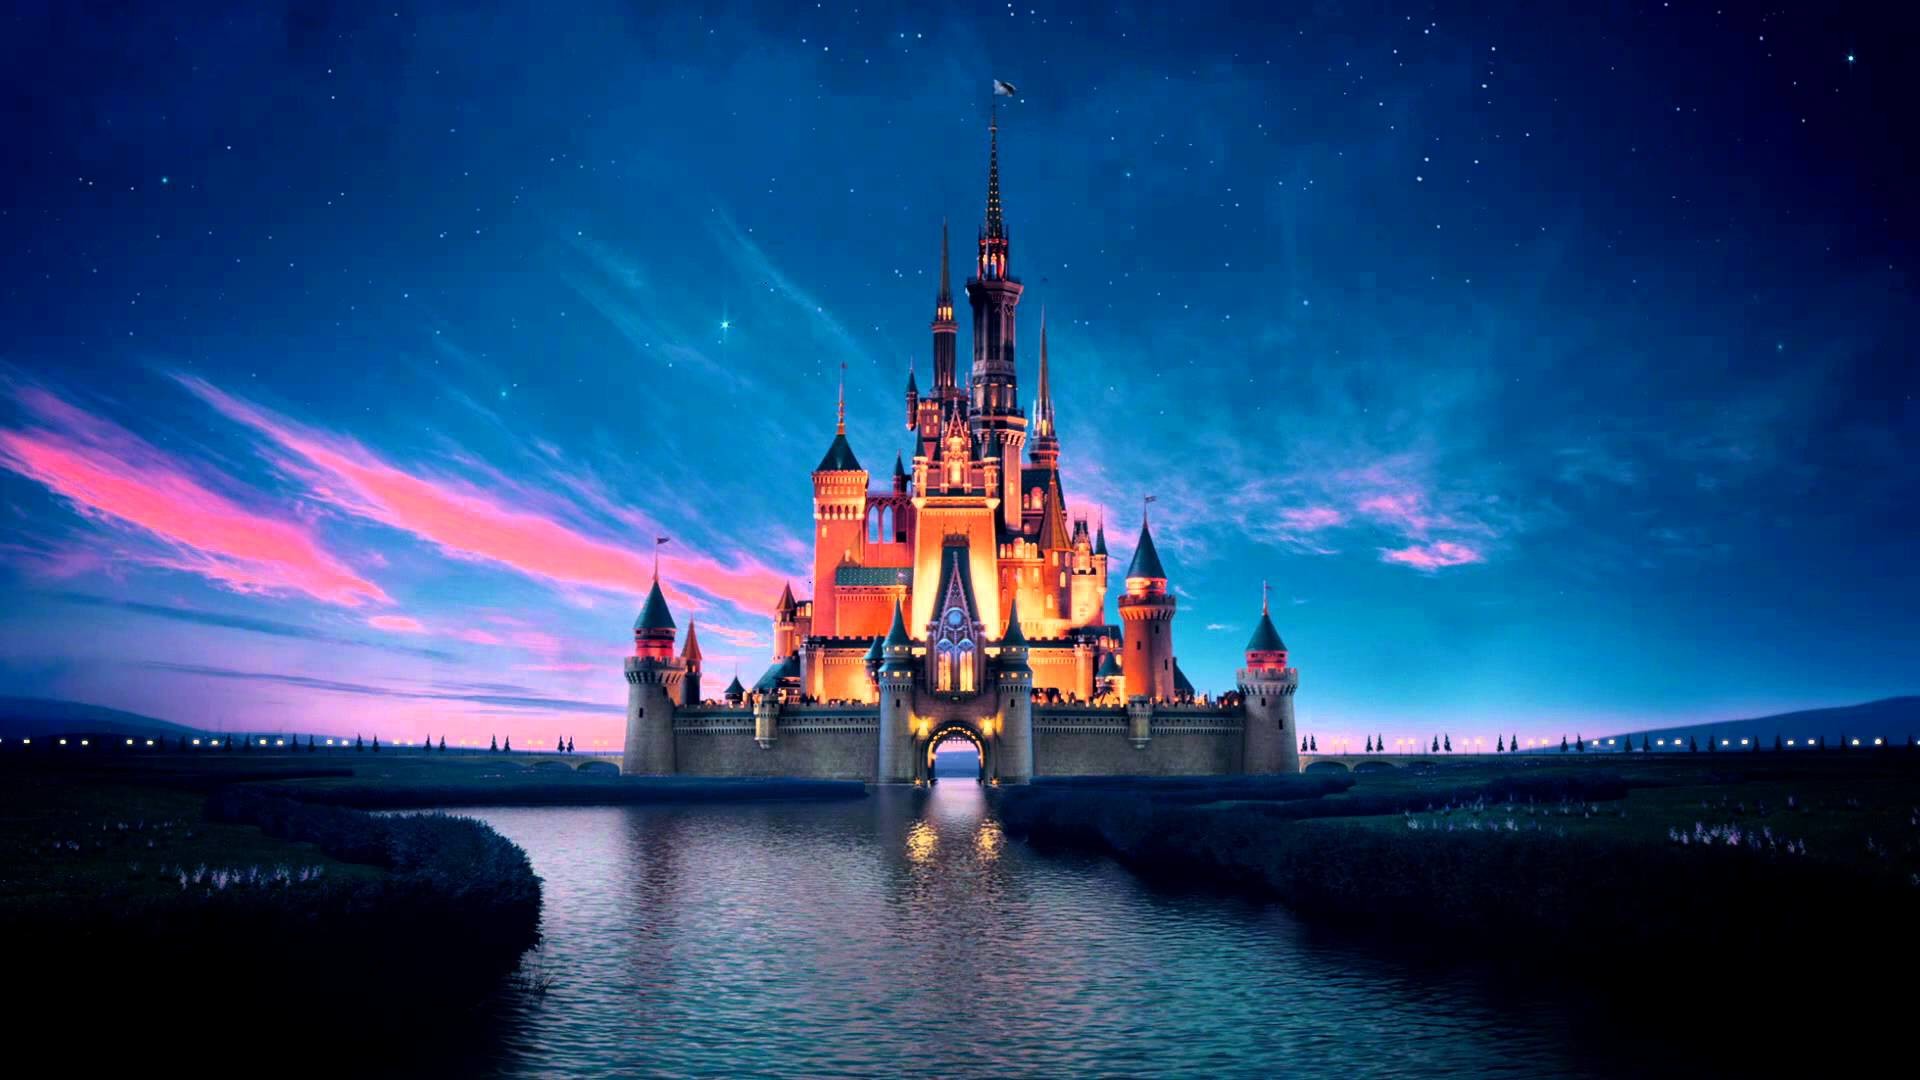 Disney Castle Wallpaper HD 72 images